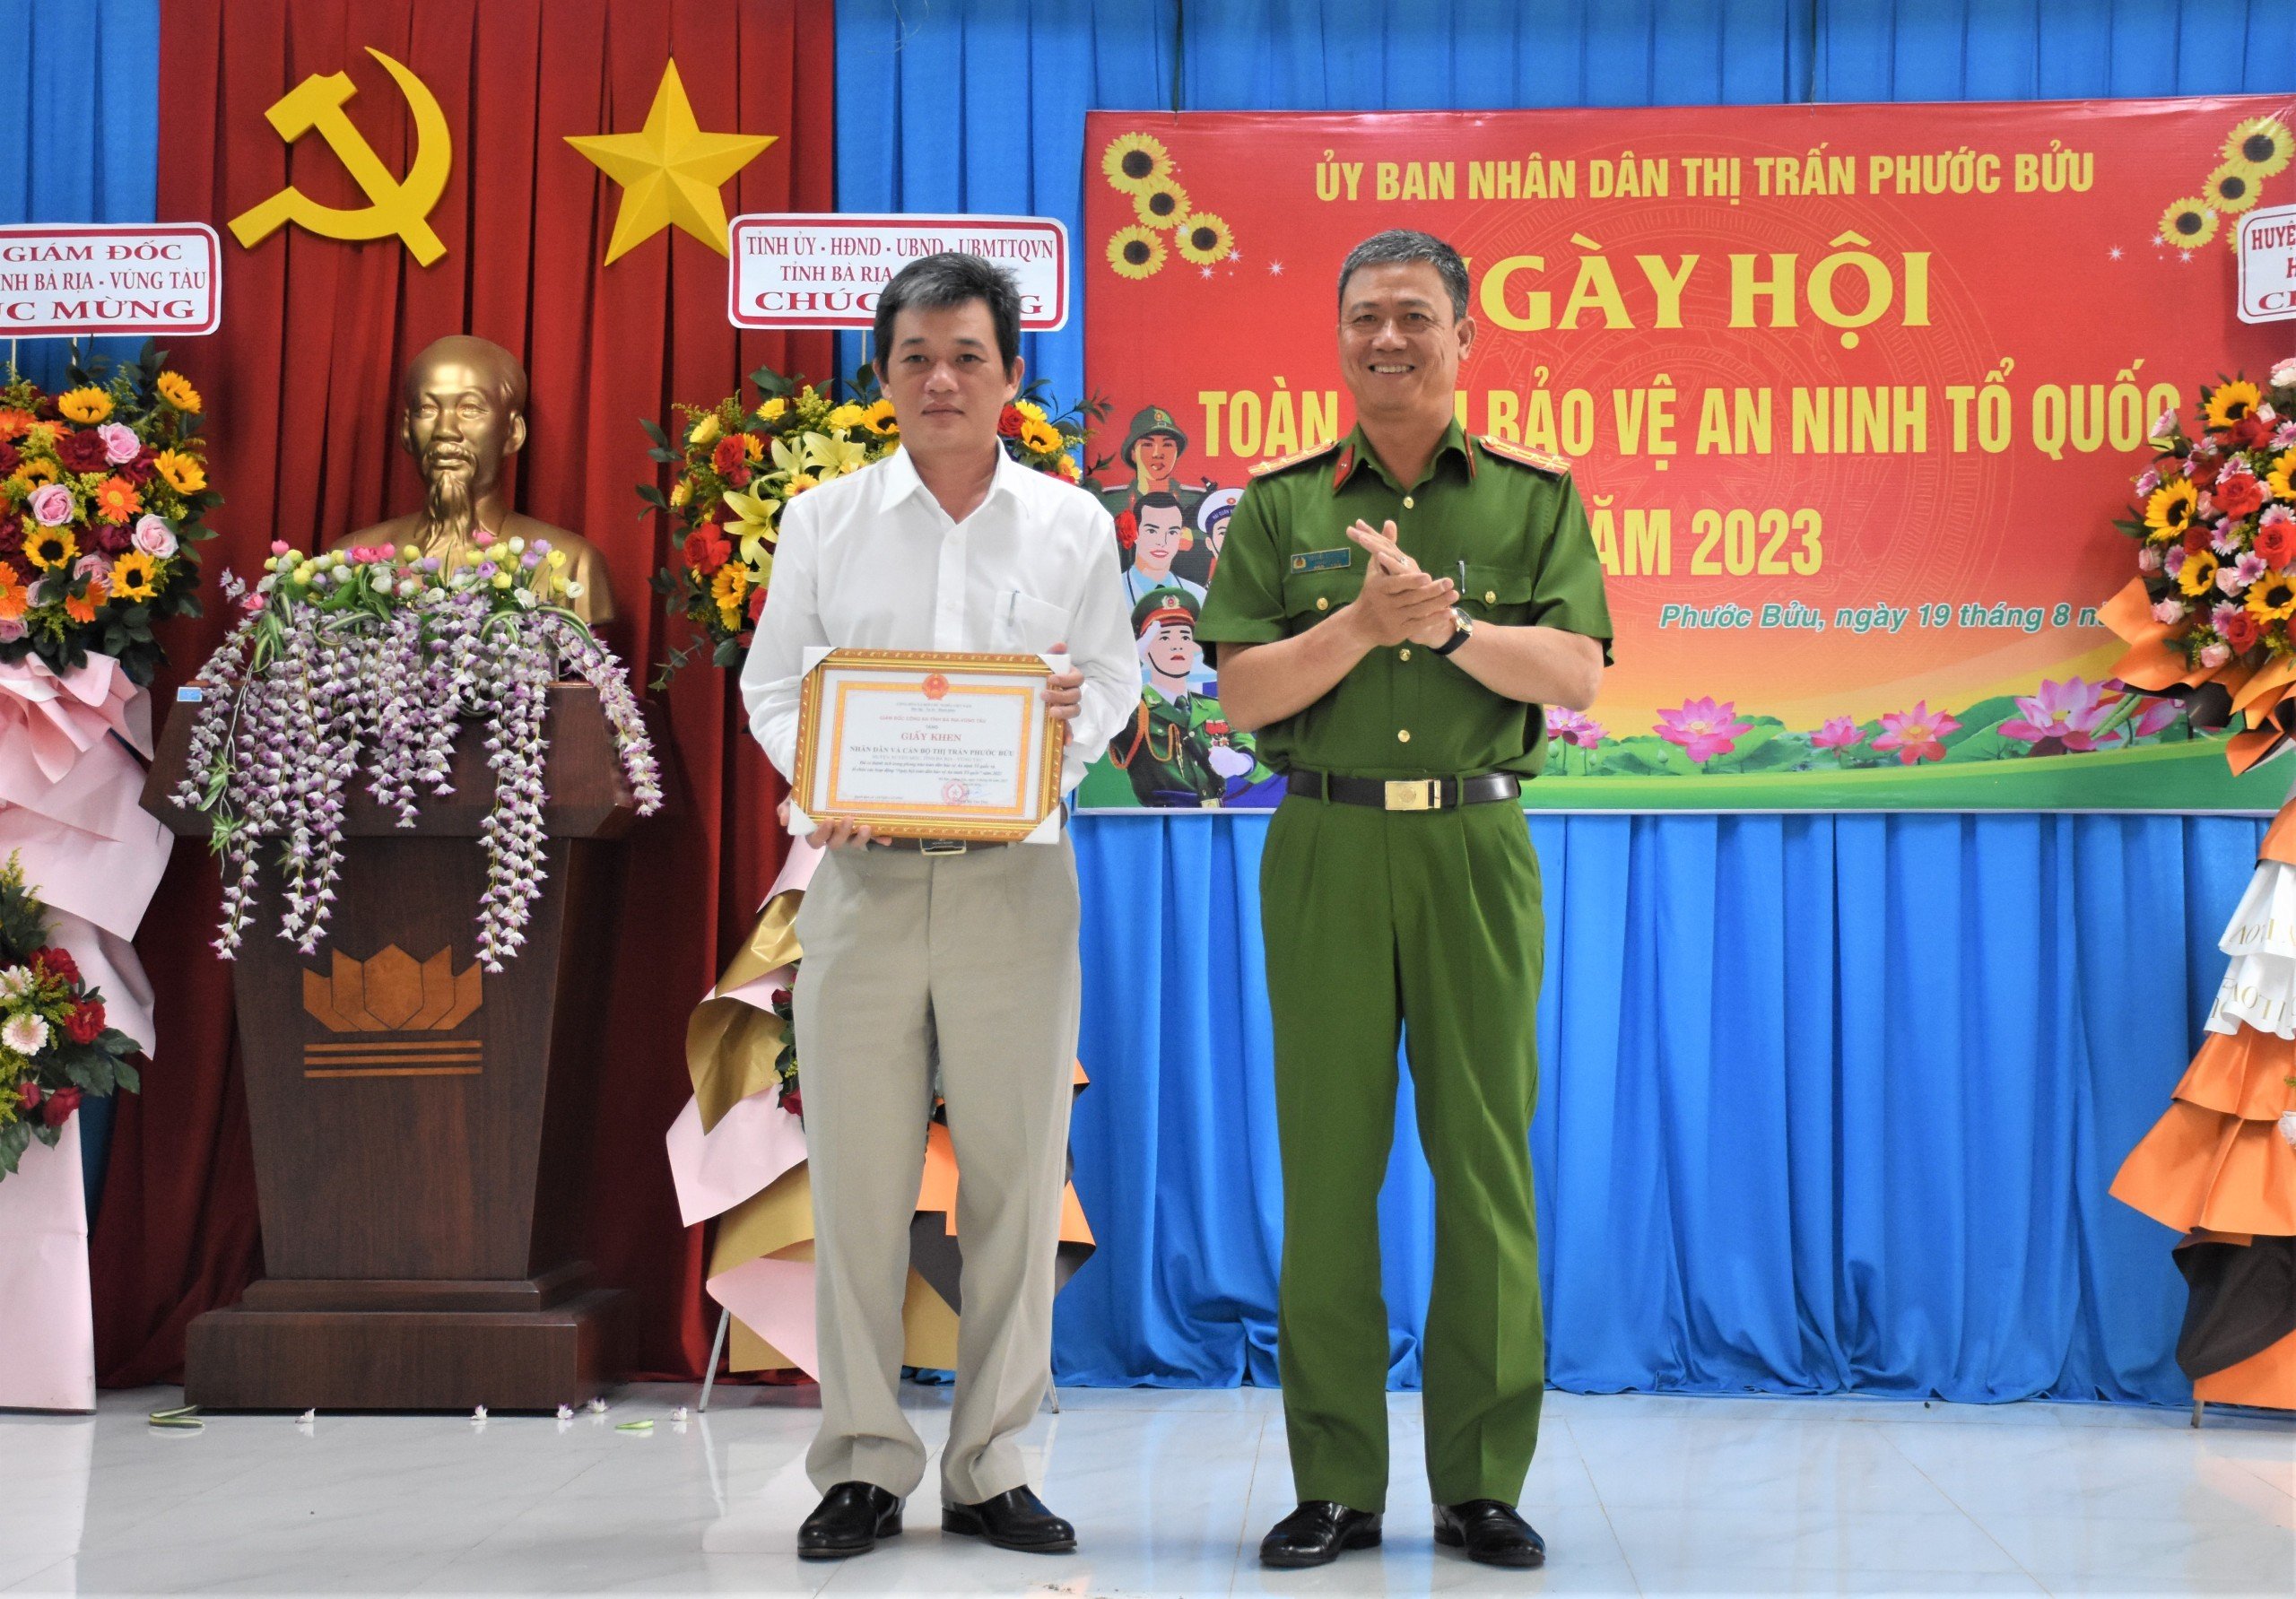 Đại tá Nguyễn Anh Hùng, Phó Giám đốc Công an tỉnh trao Giấy khen của Công an tỉnh cho tập thể cán bộ và nhân dân TT.Phước Bửu (huyện Xuyên Mộc) tại ngày hội.